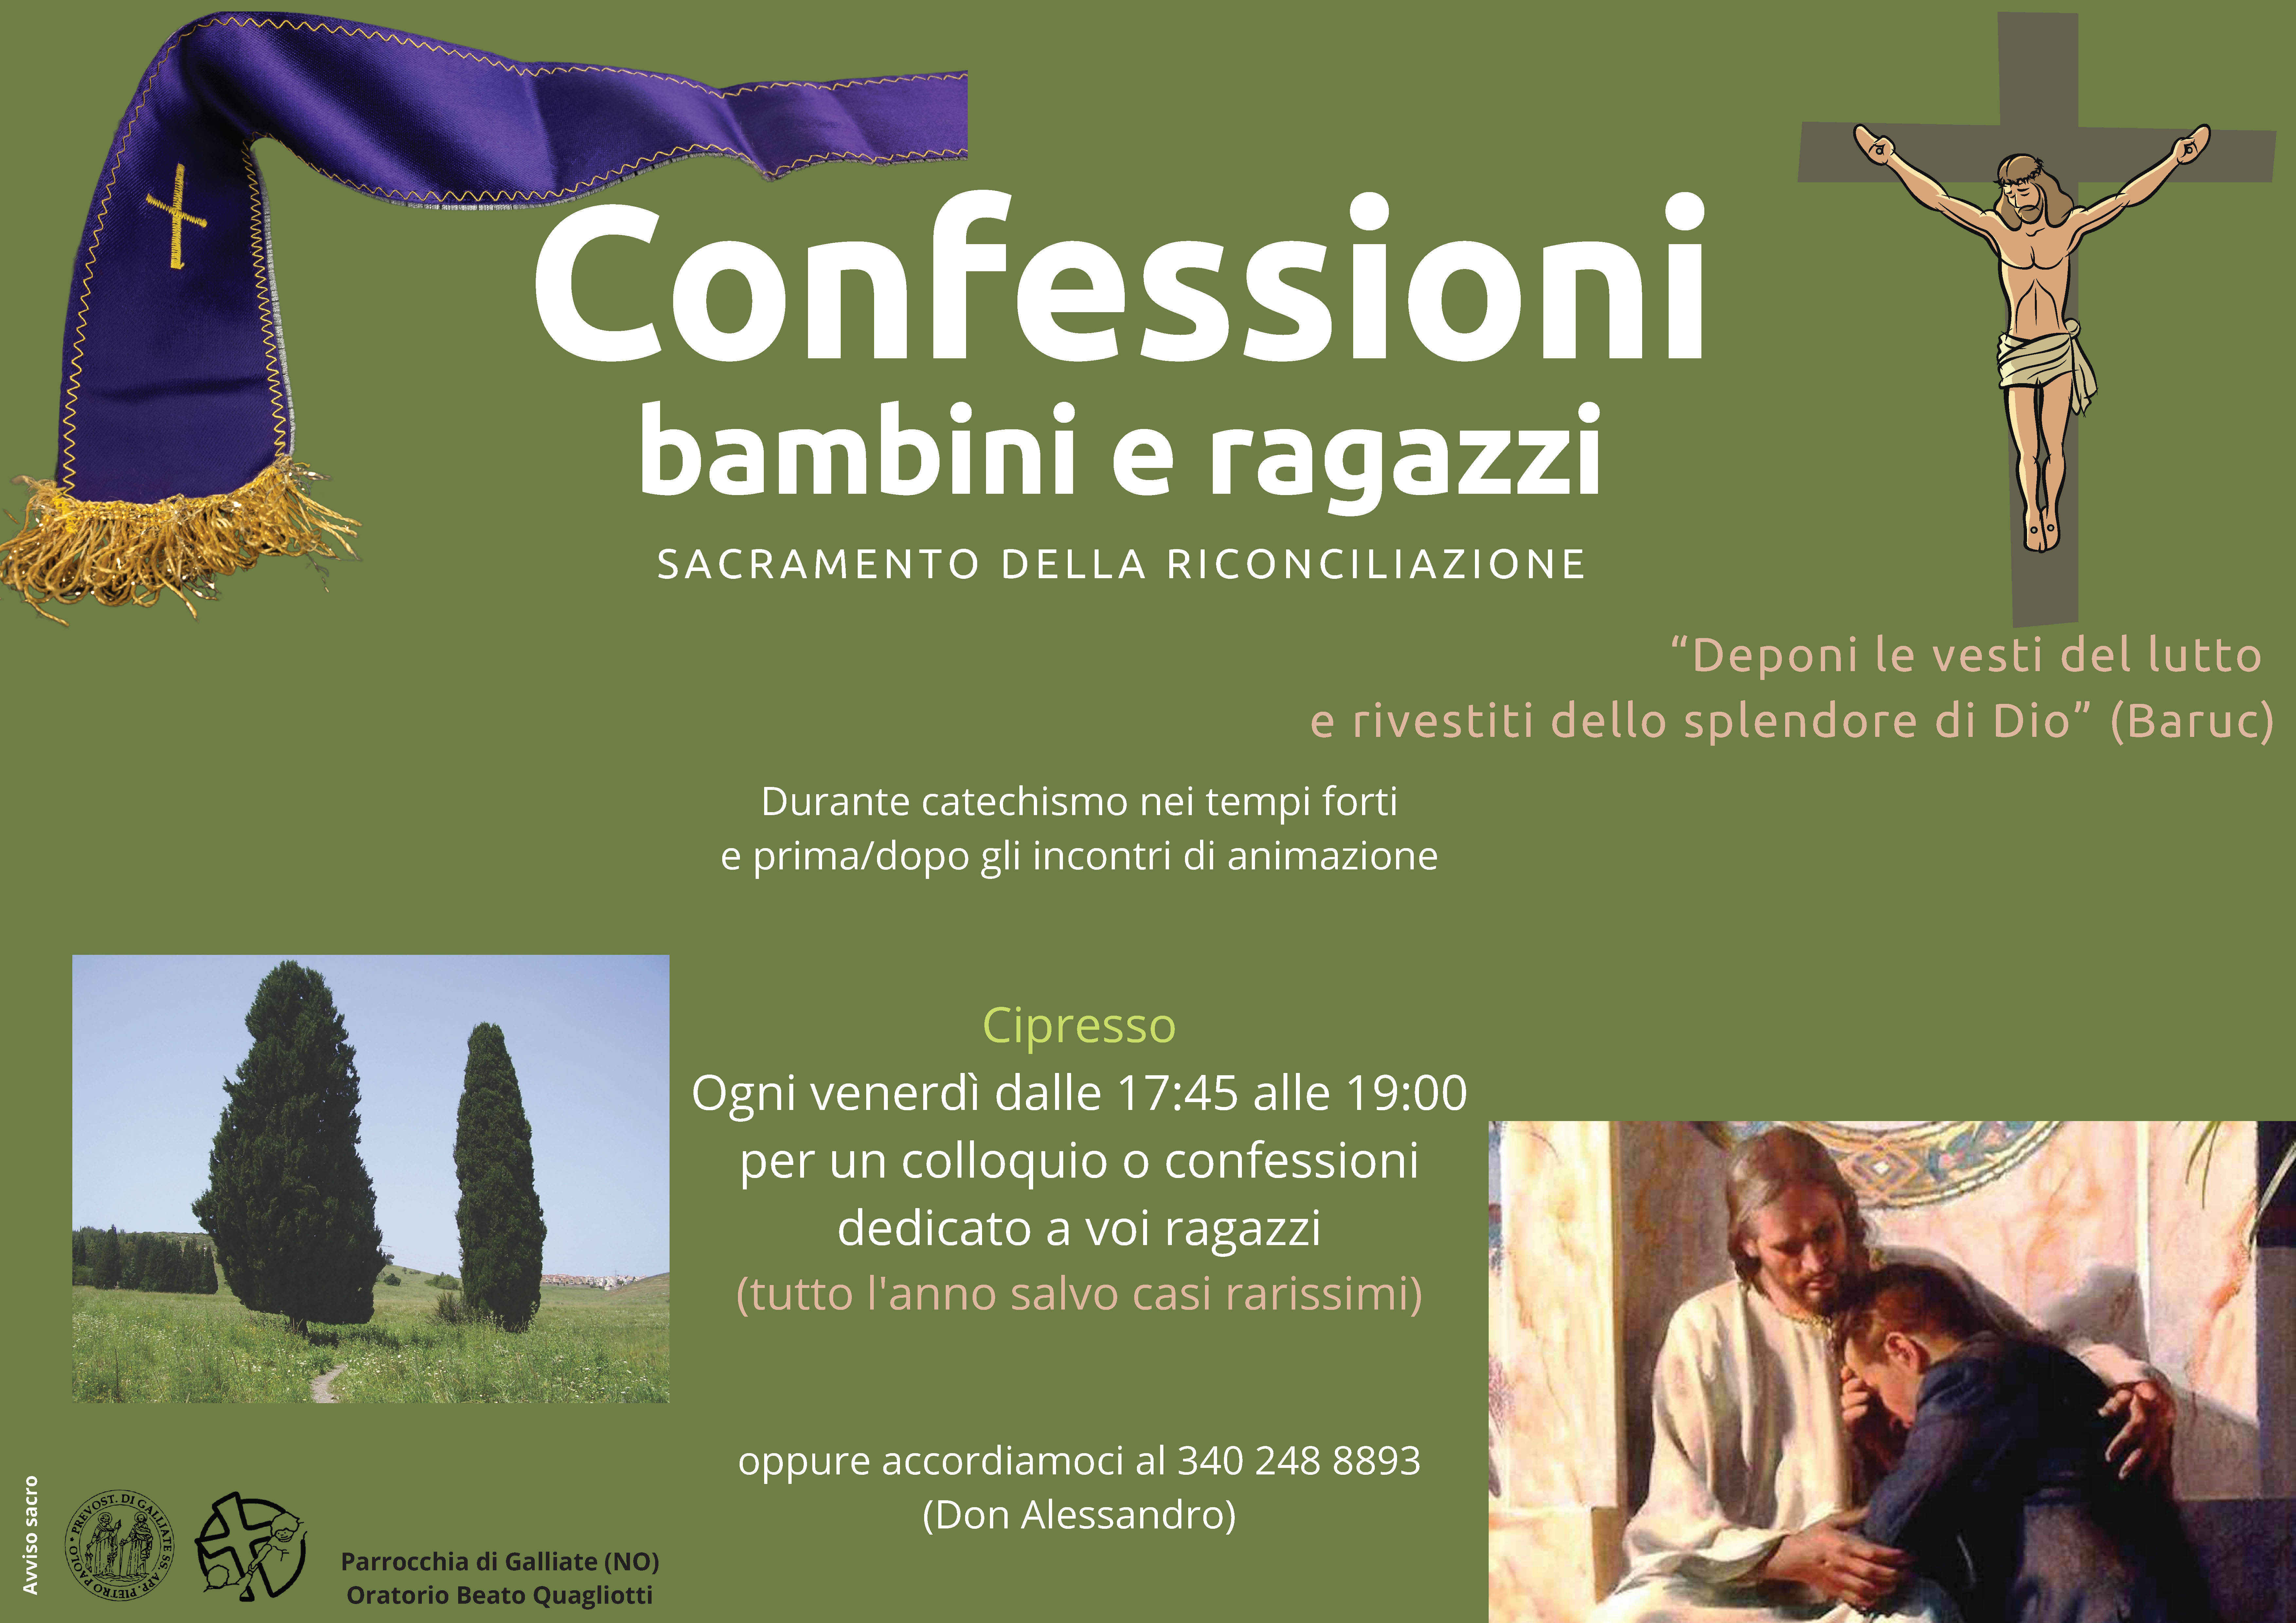 bp211128-ConfessioniRagazzi_verde